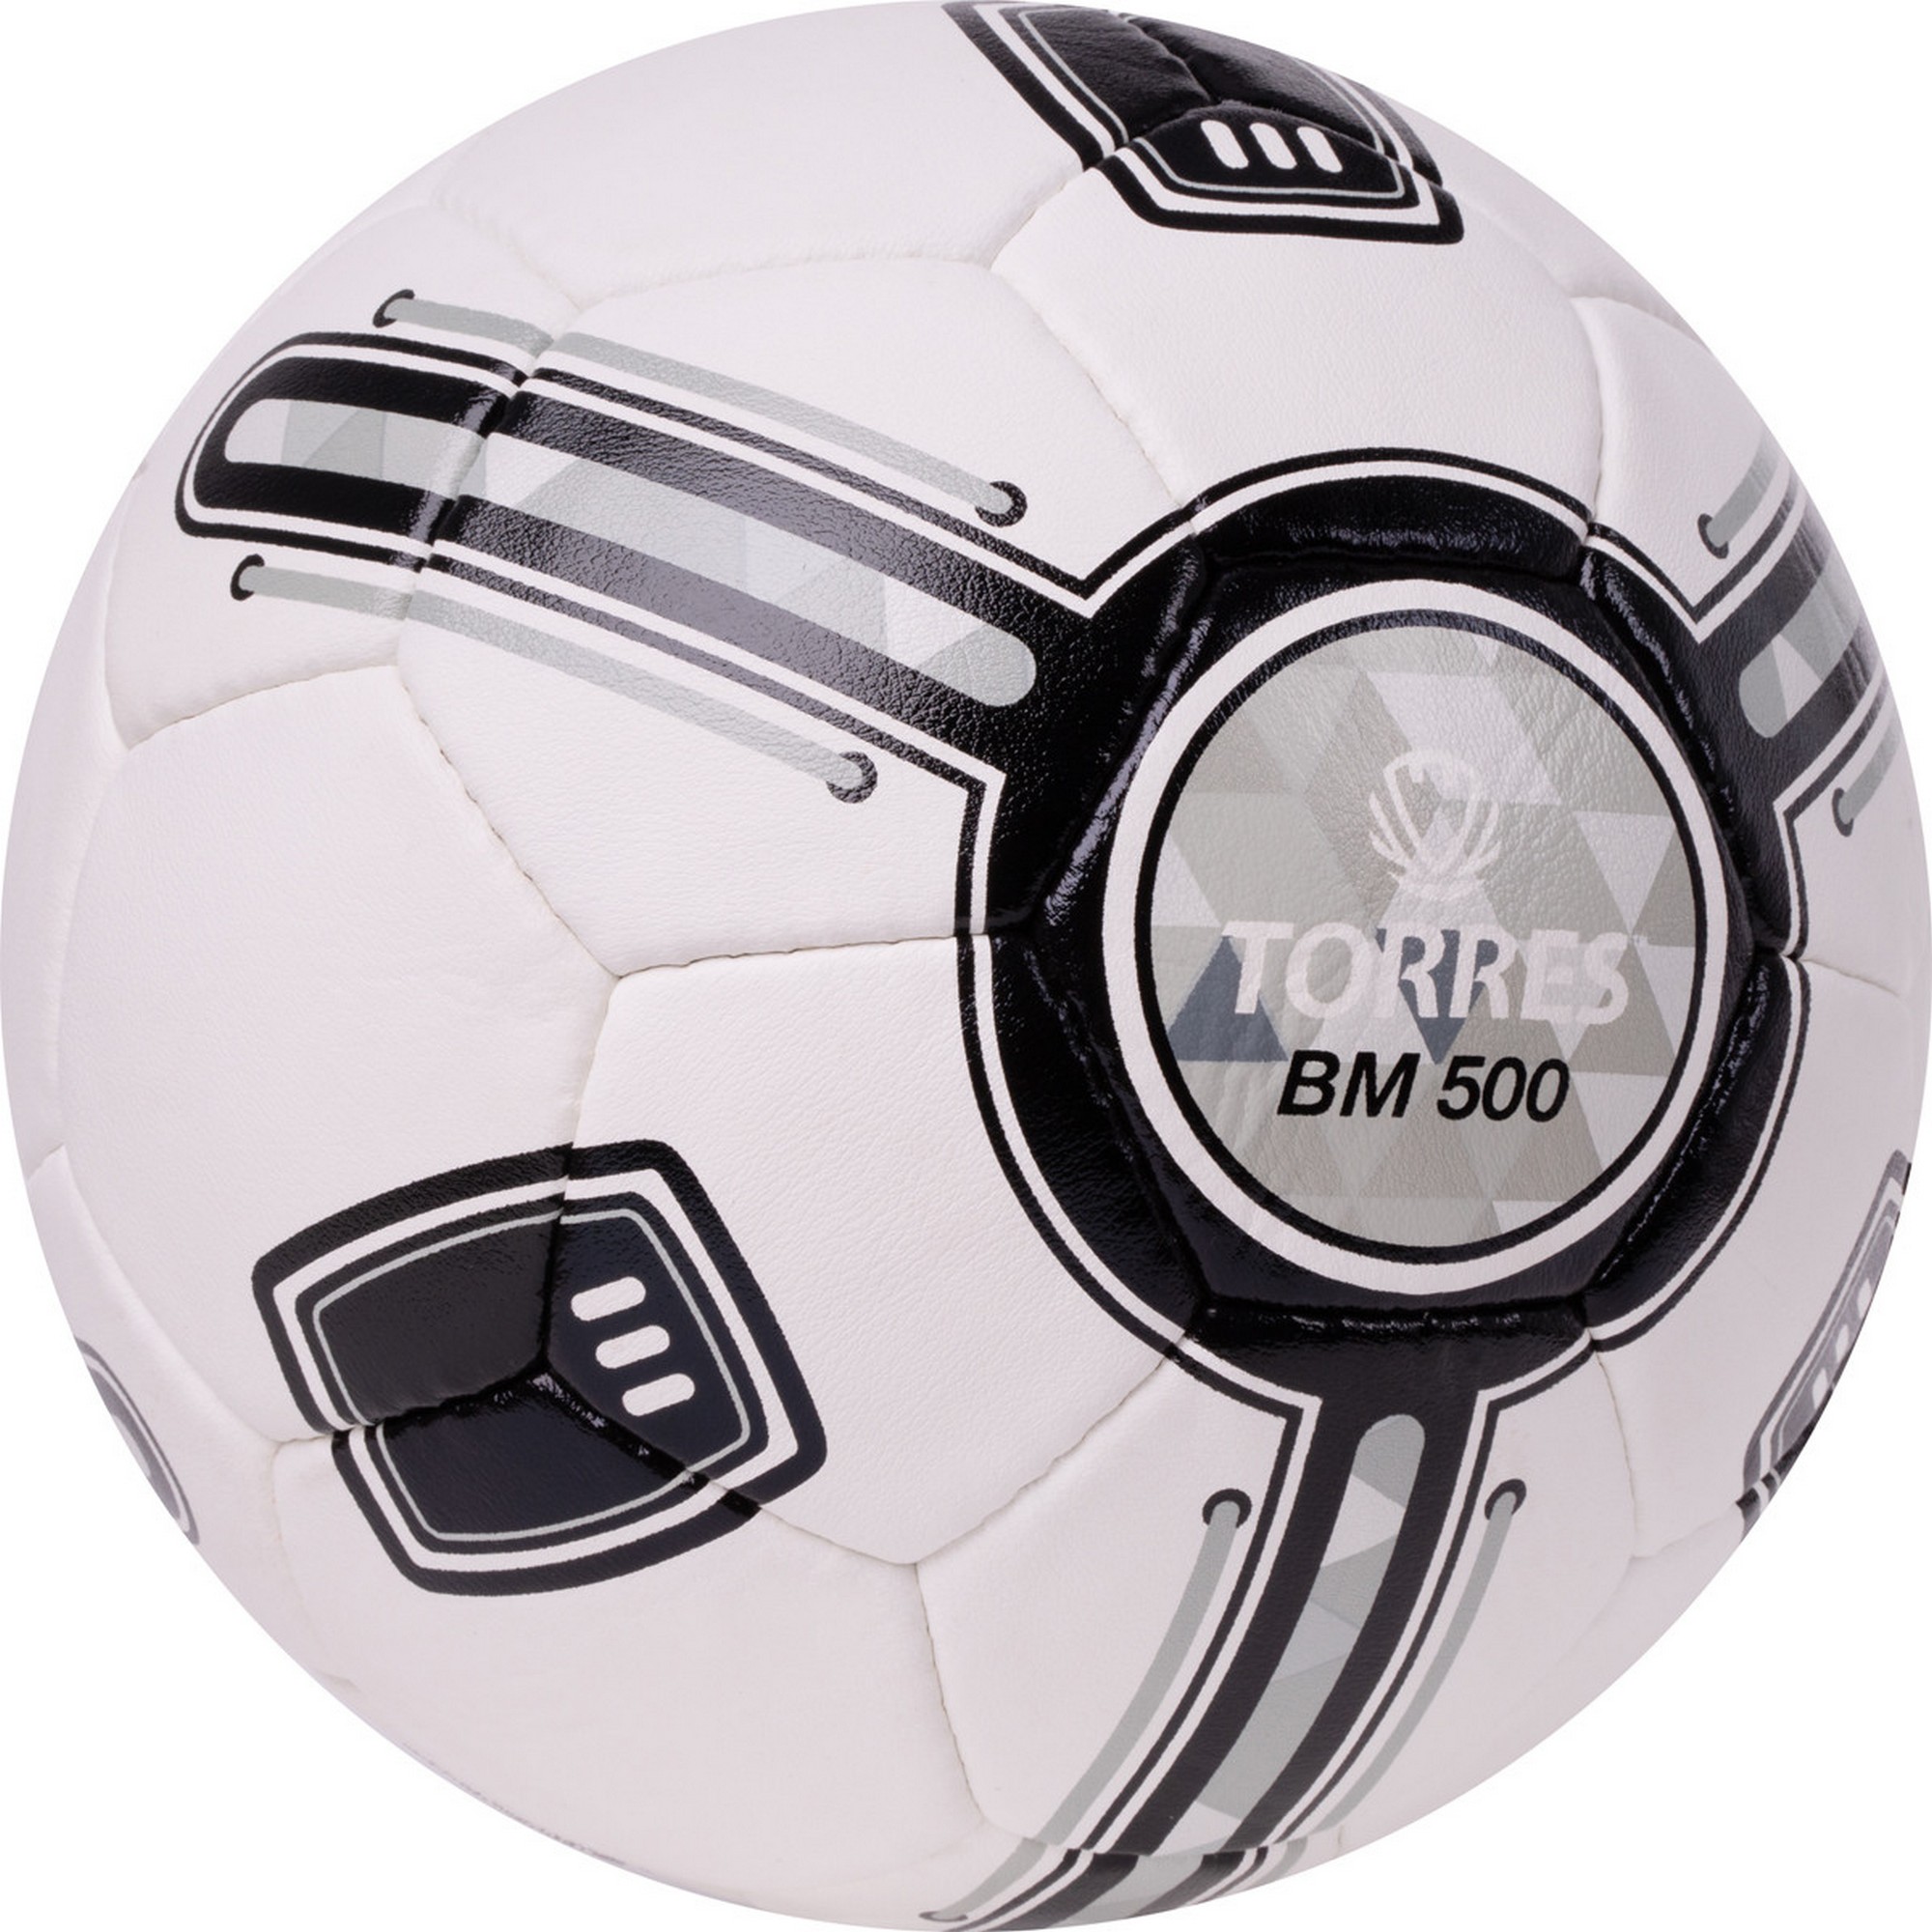 Мяч футбольный Torres BM 500 F323645 р.5 2000_2000